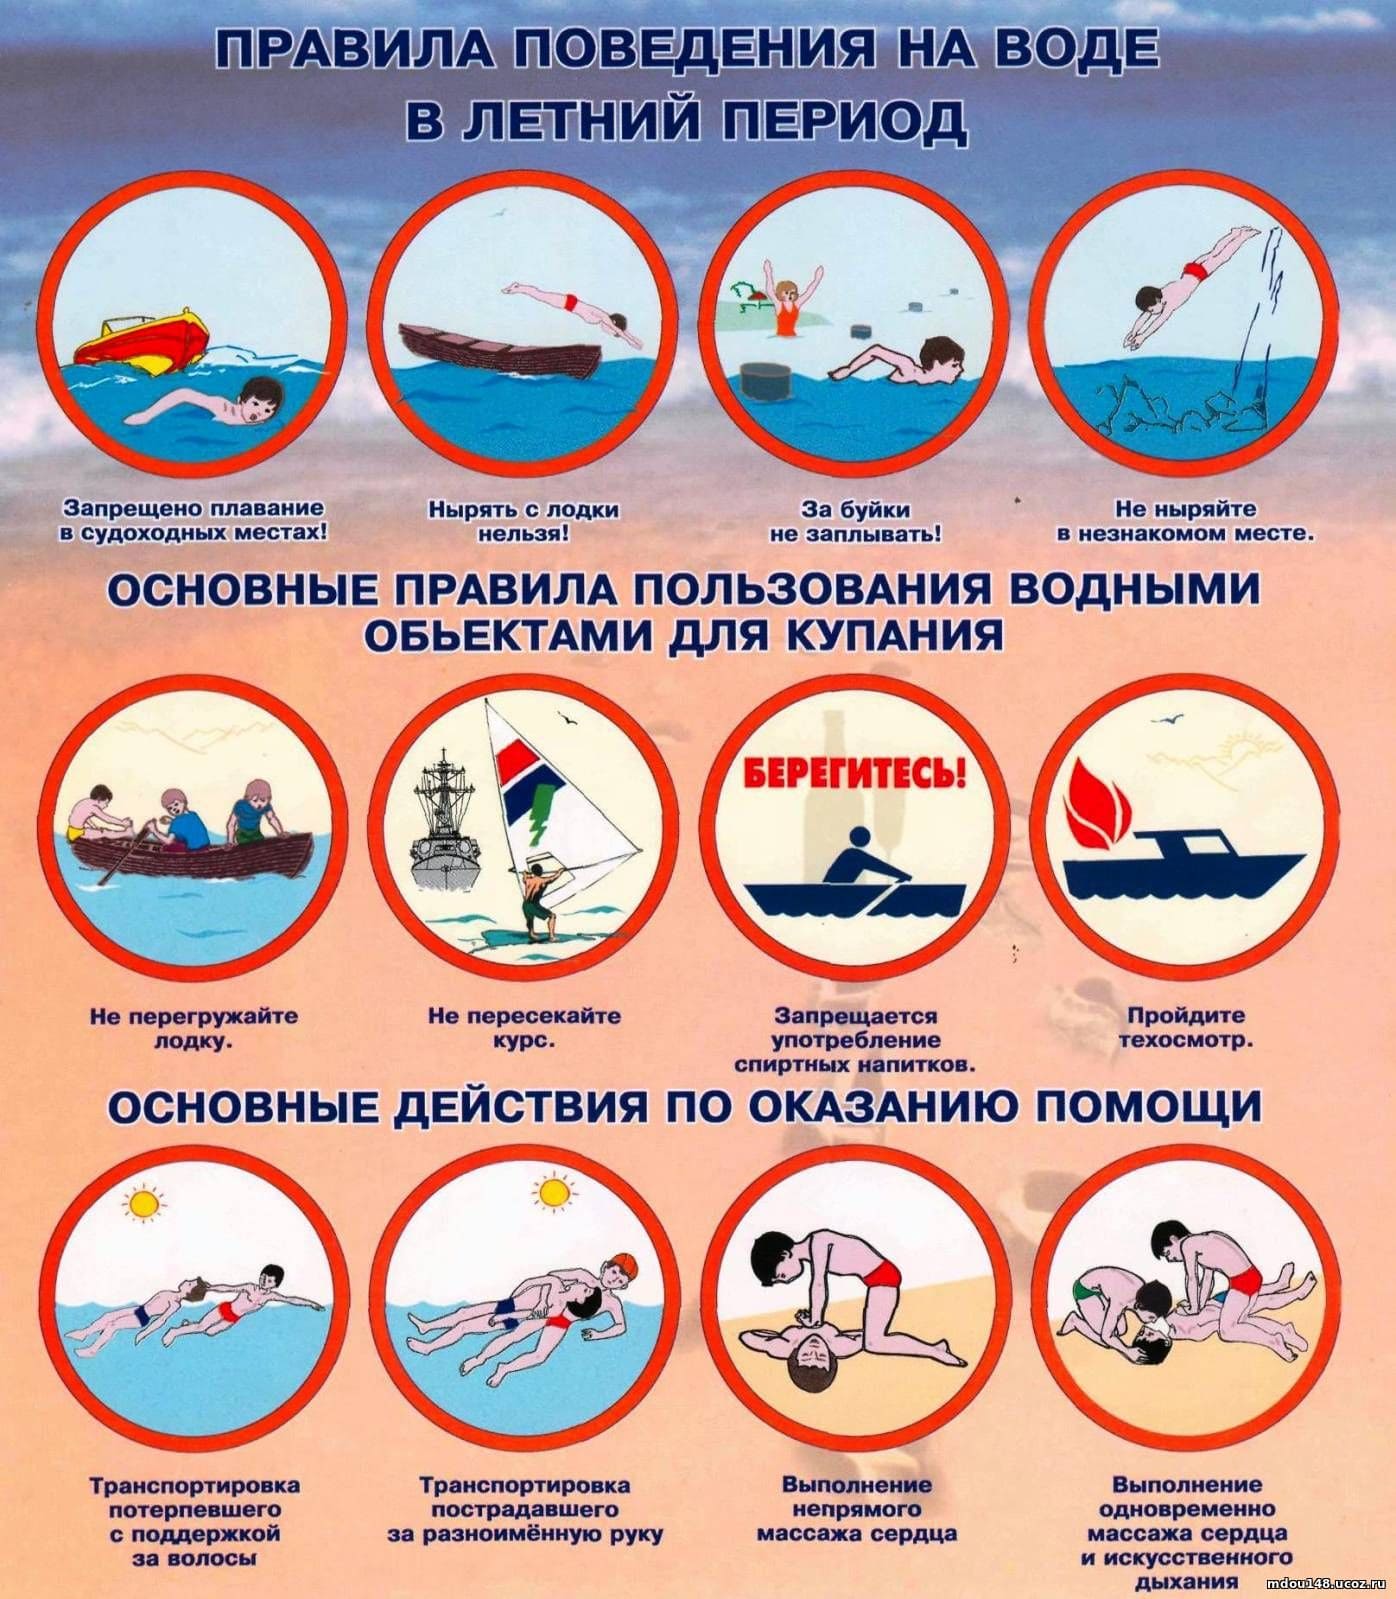 pravila povedenija na vode v letnij period